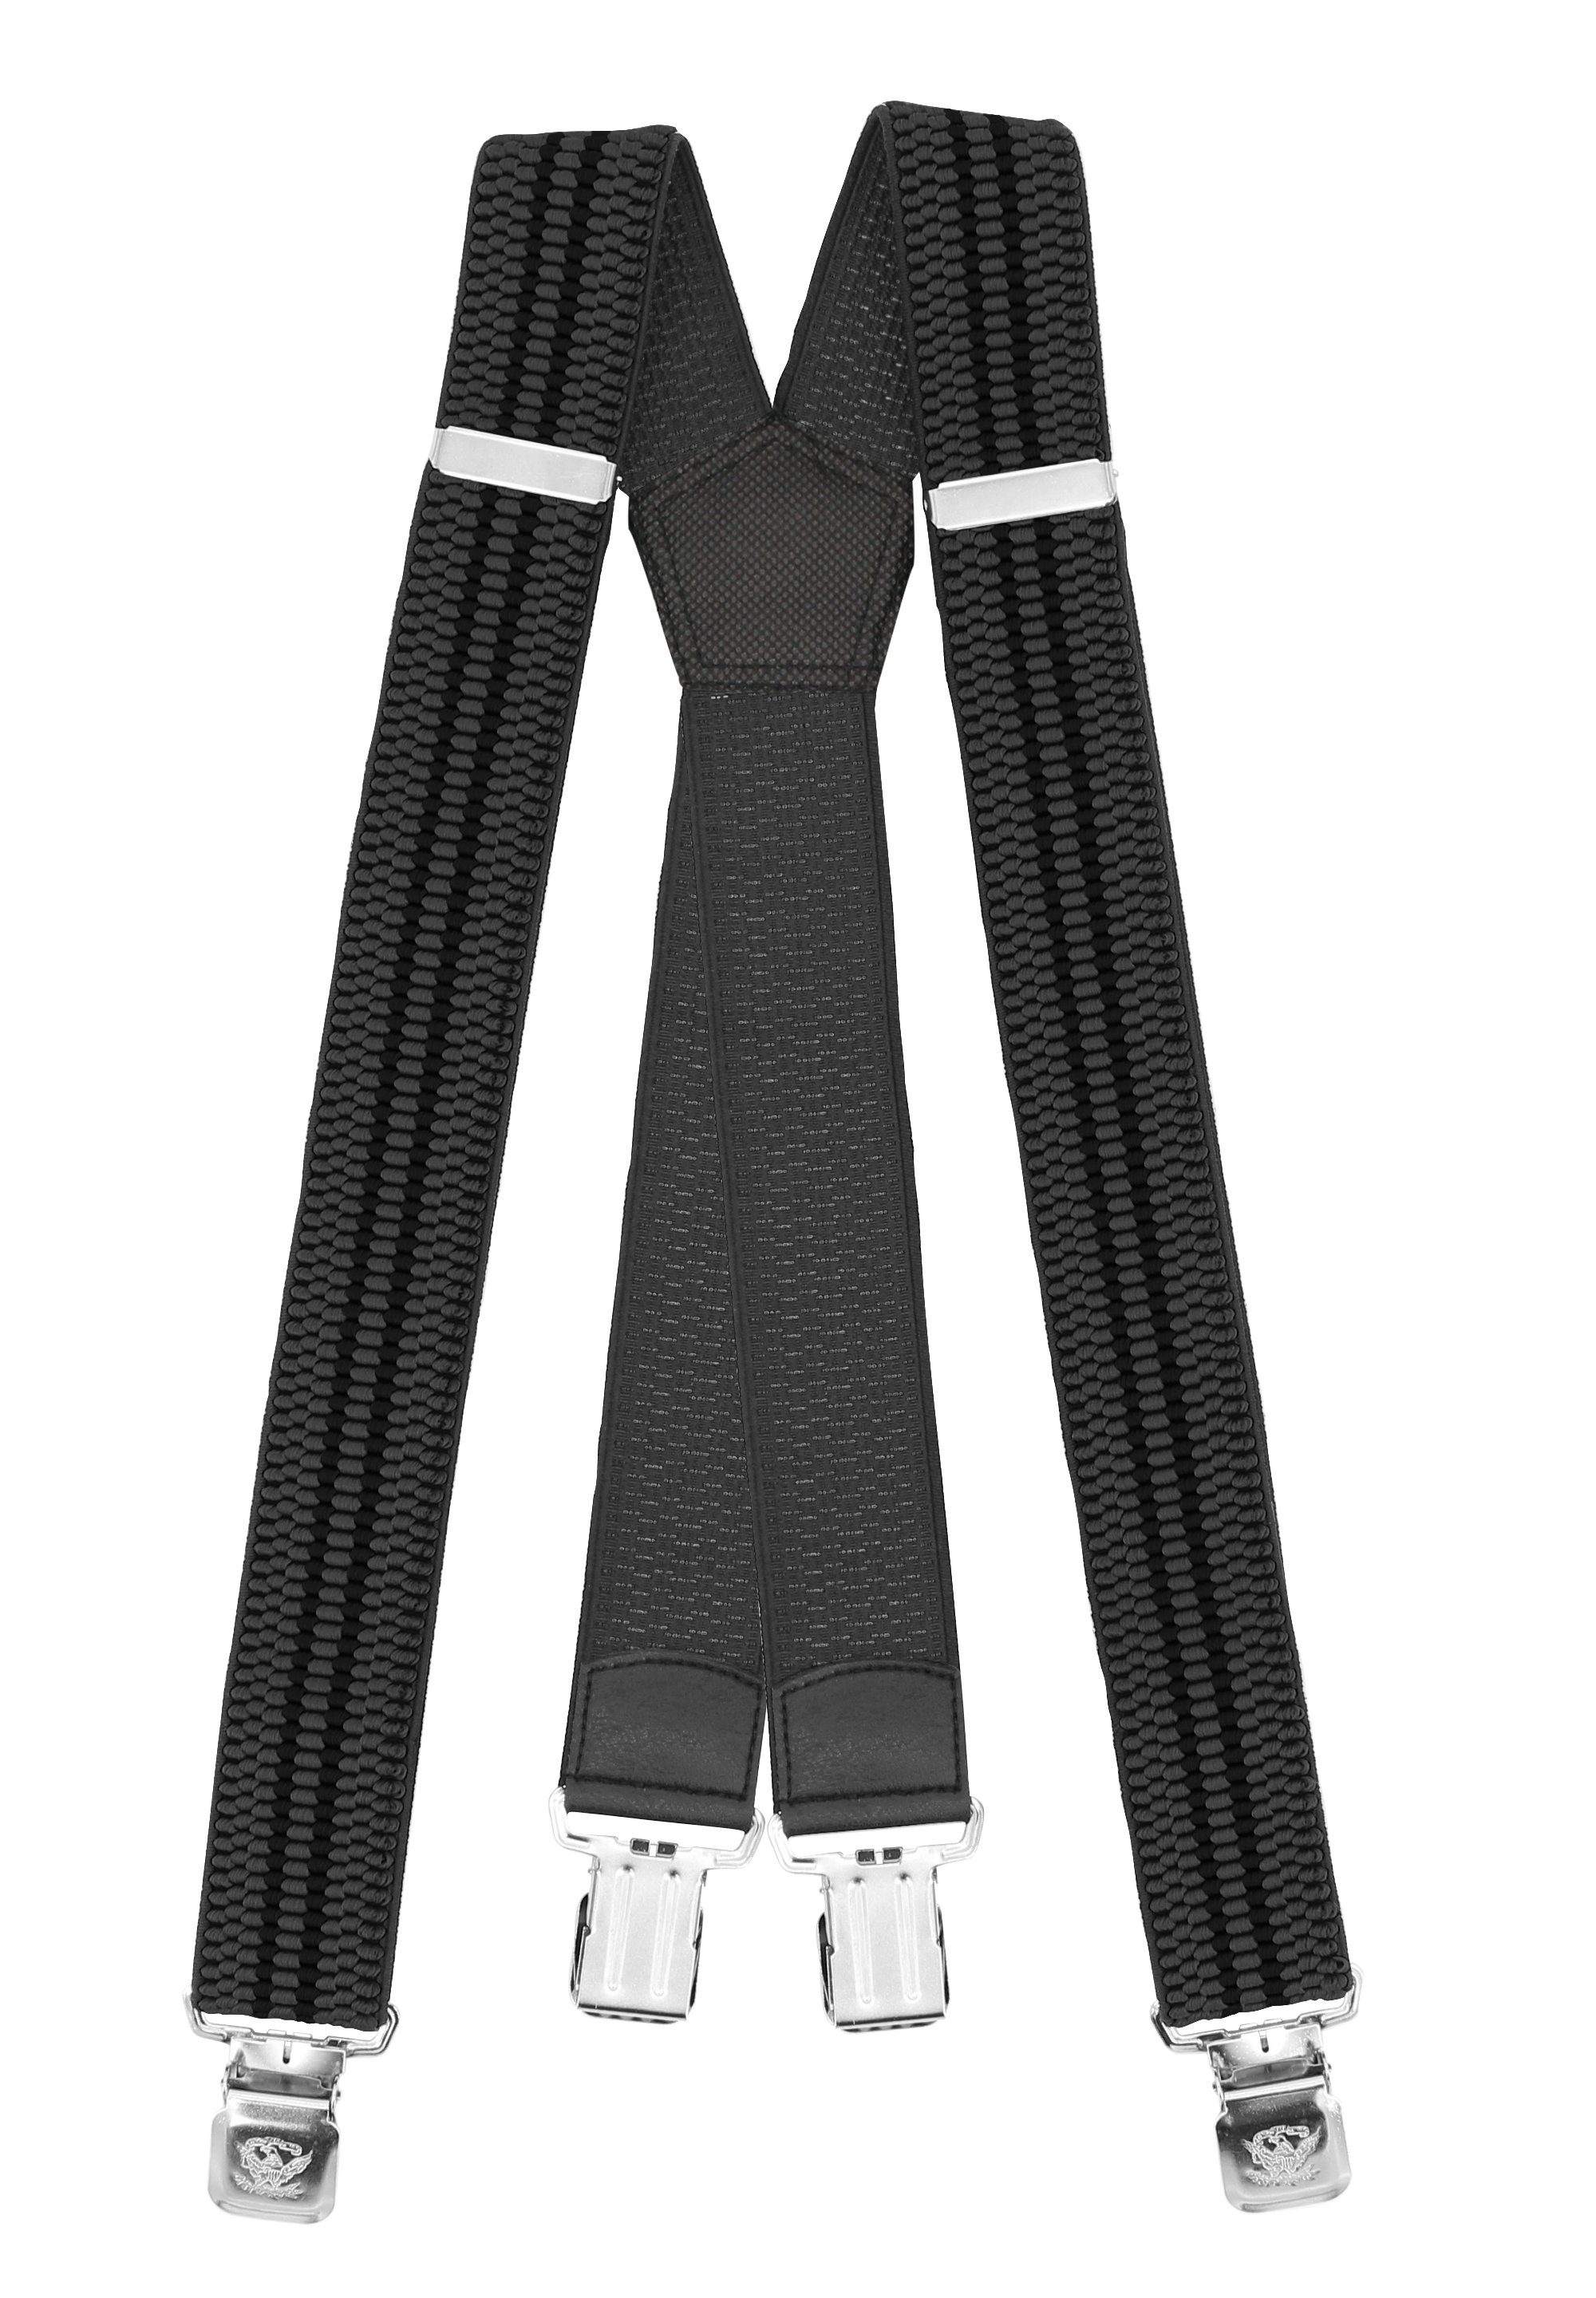 schwarzen Grau Streifen) Hosenträger (schwarze mit Grau Fabio Streifen verstellbar Clipverschluss, extra starken 4cm Farini mit Breites X-Design